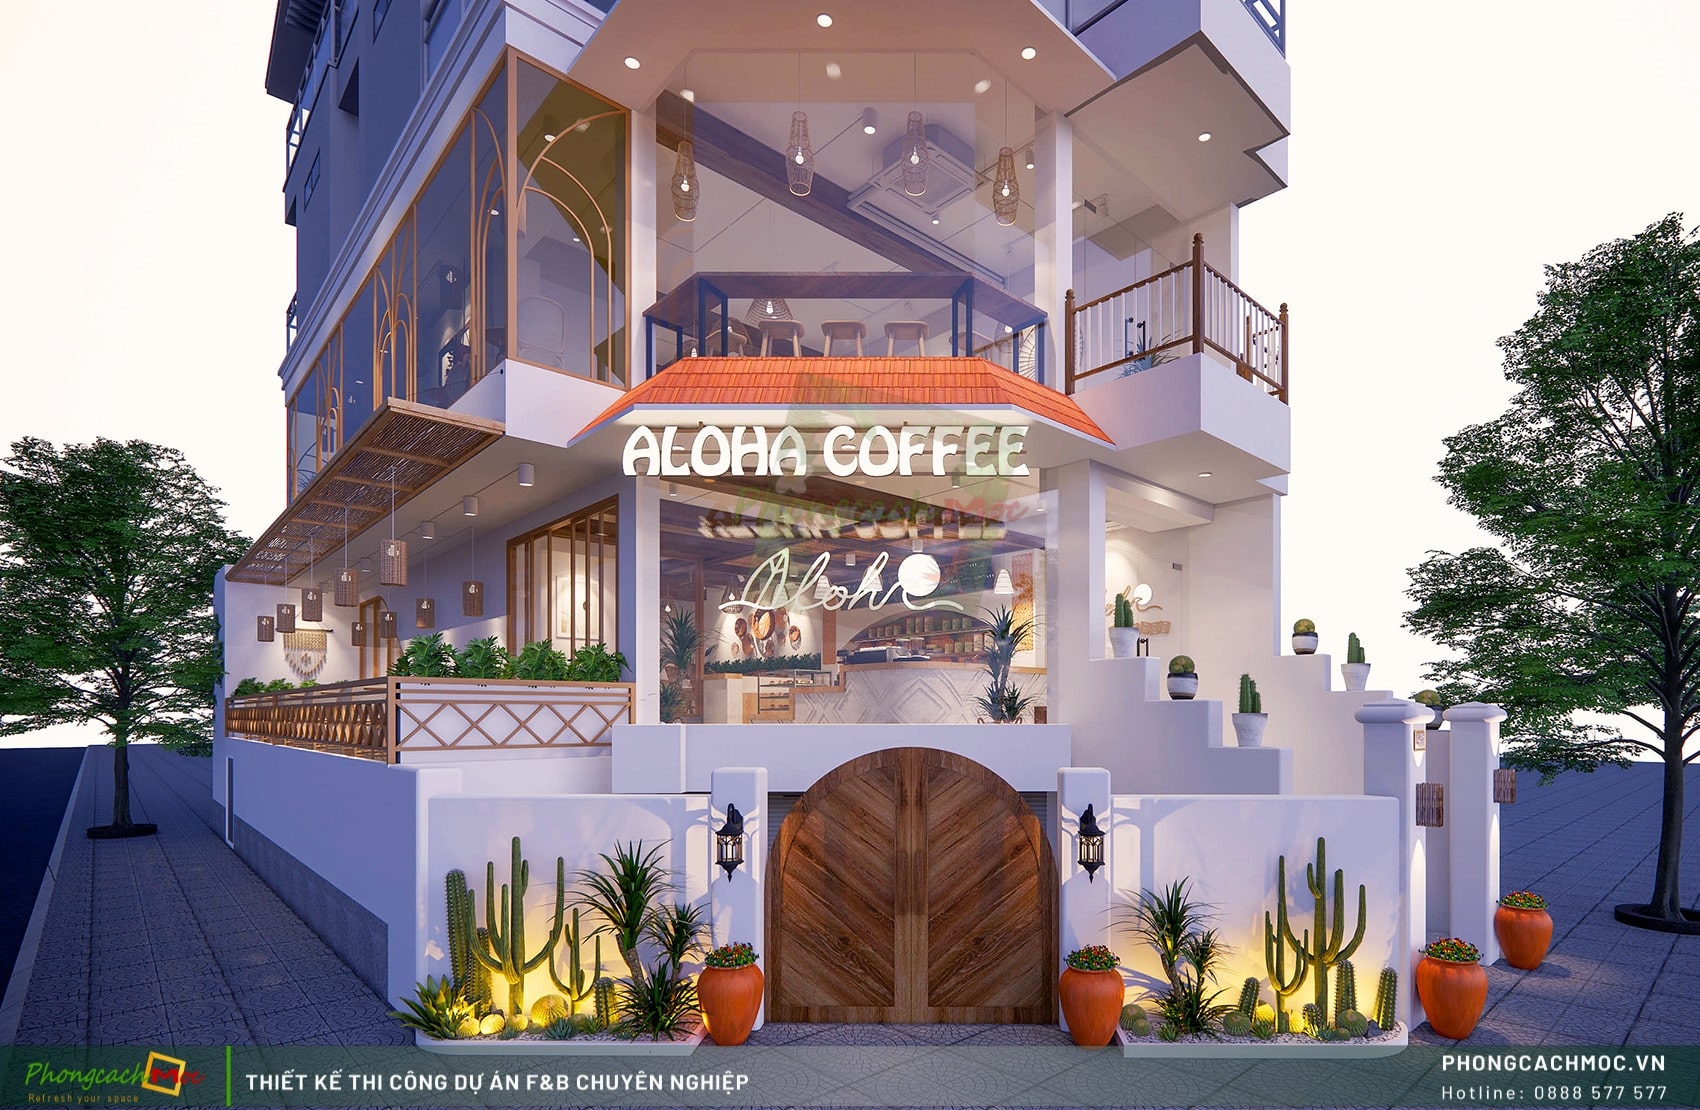 Thiết kế thi công quán cafe phong cách Địa Trung Hải - Aloha Coffee Quận 7